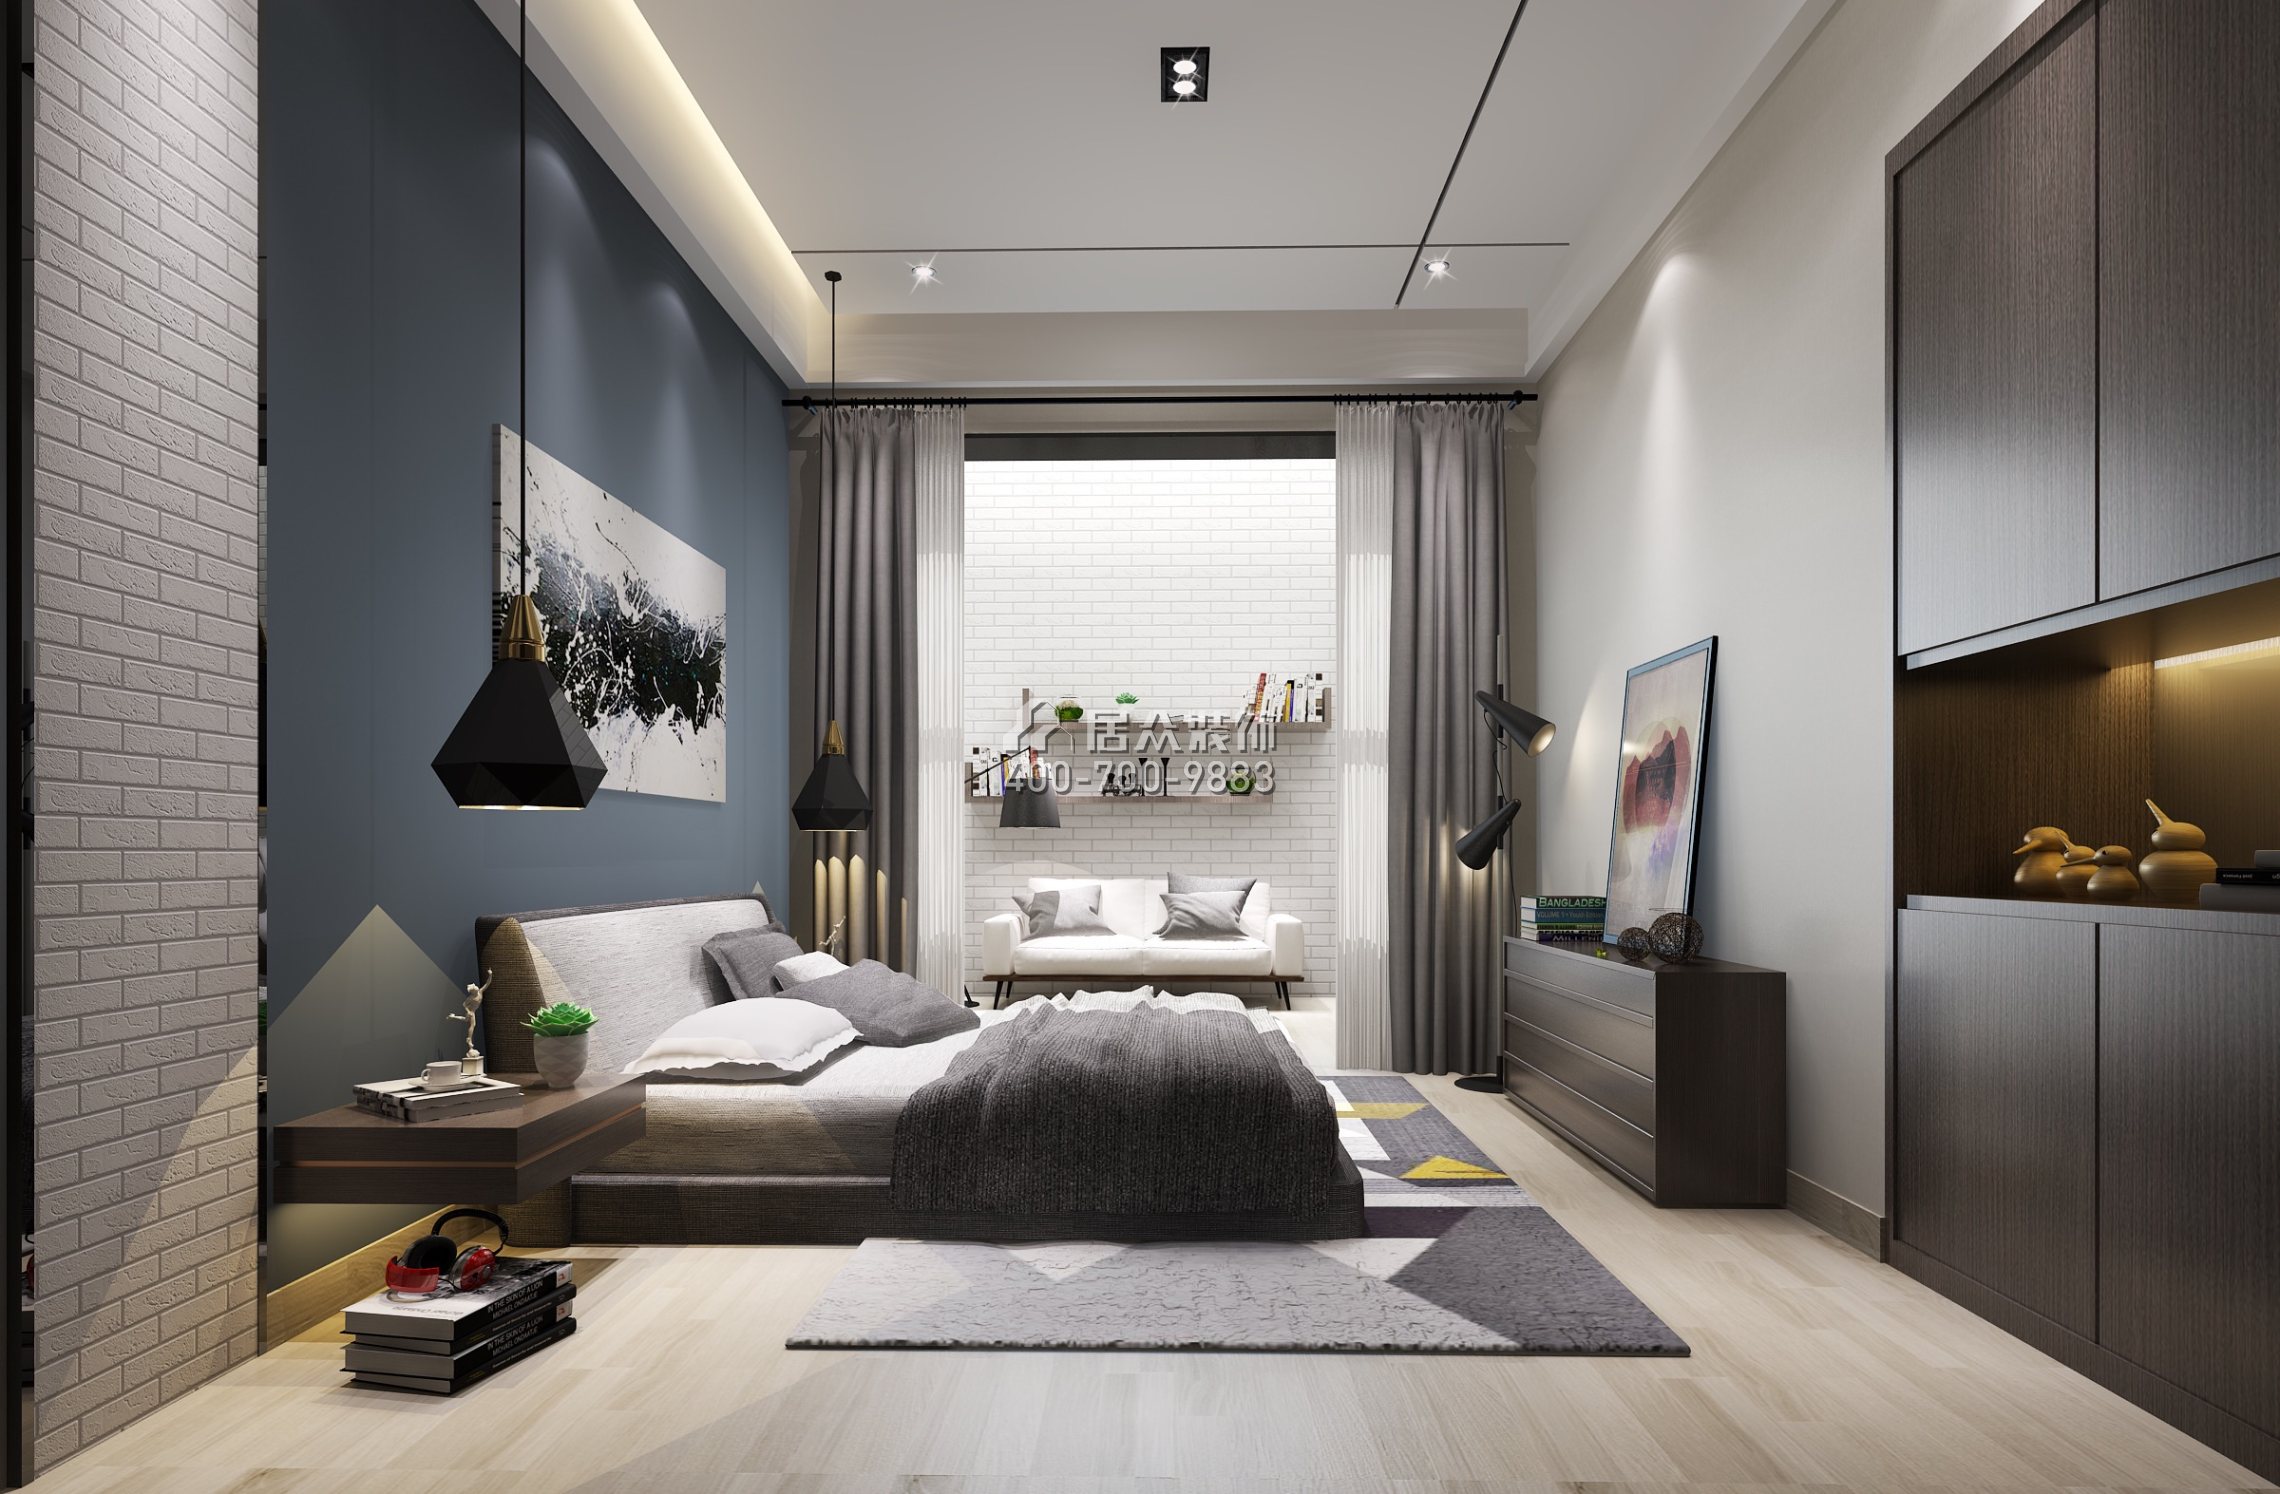 山水芳鄰240平方米現代簡約風格復式戶型臥室裝修效果圖